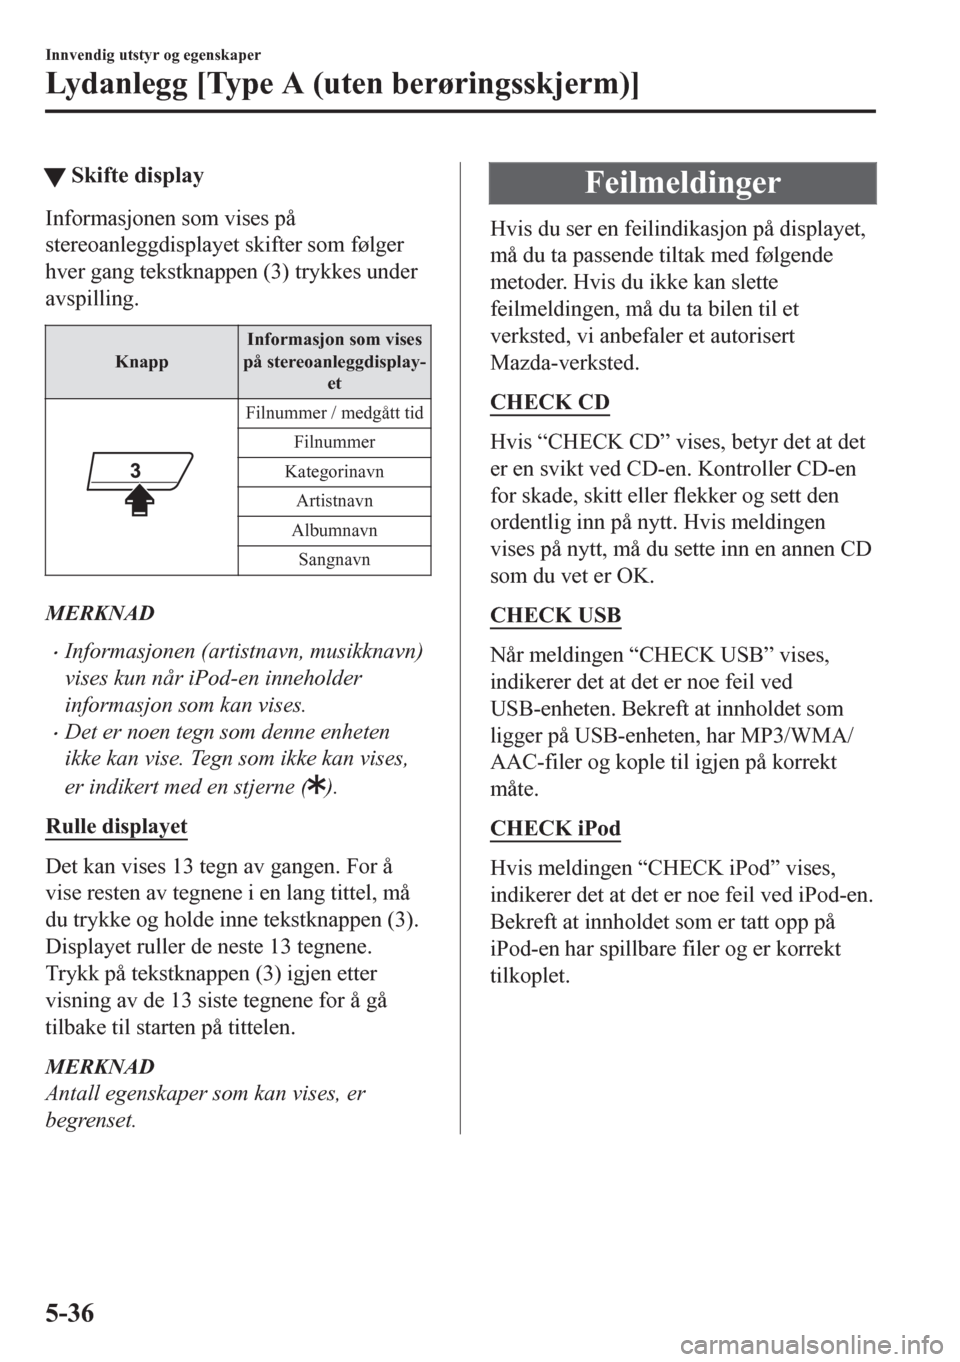 MAZDA MODEL CX-5 2018  Brukerhåndbok (in Norwegian) tSkifte display
Informasjonen som vises på
stereoanleggdisplayet skifter som følger
hver gang tekstknappen (3) trykkes under
avspilling.
KnappInformasjon som vises
på stereoanleggdisplay-
et
Filnum